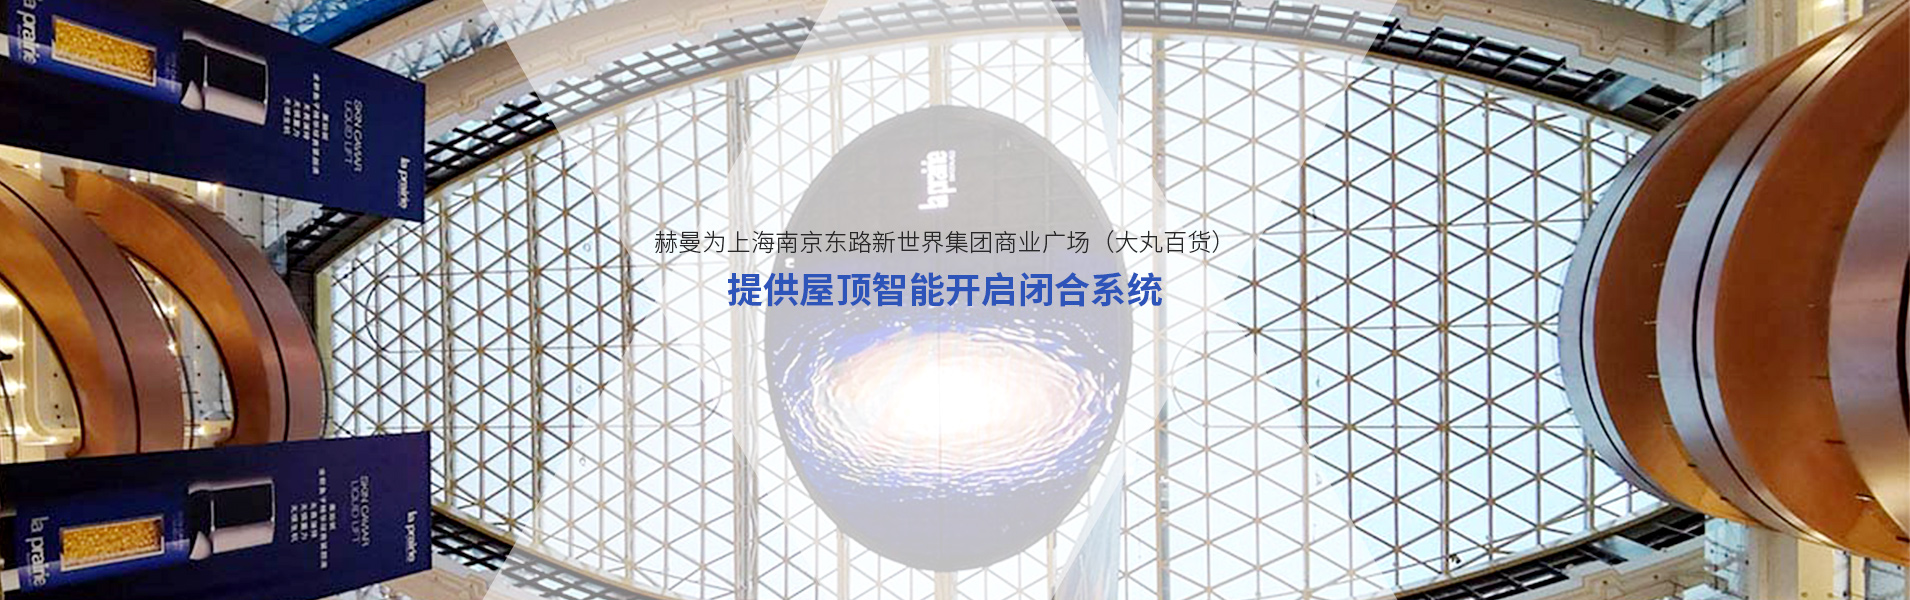 上海耐斯特液压设备有限公司公司介绍